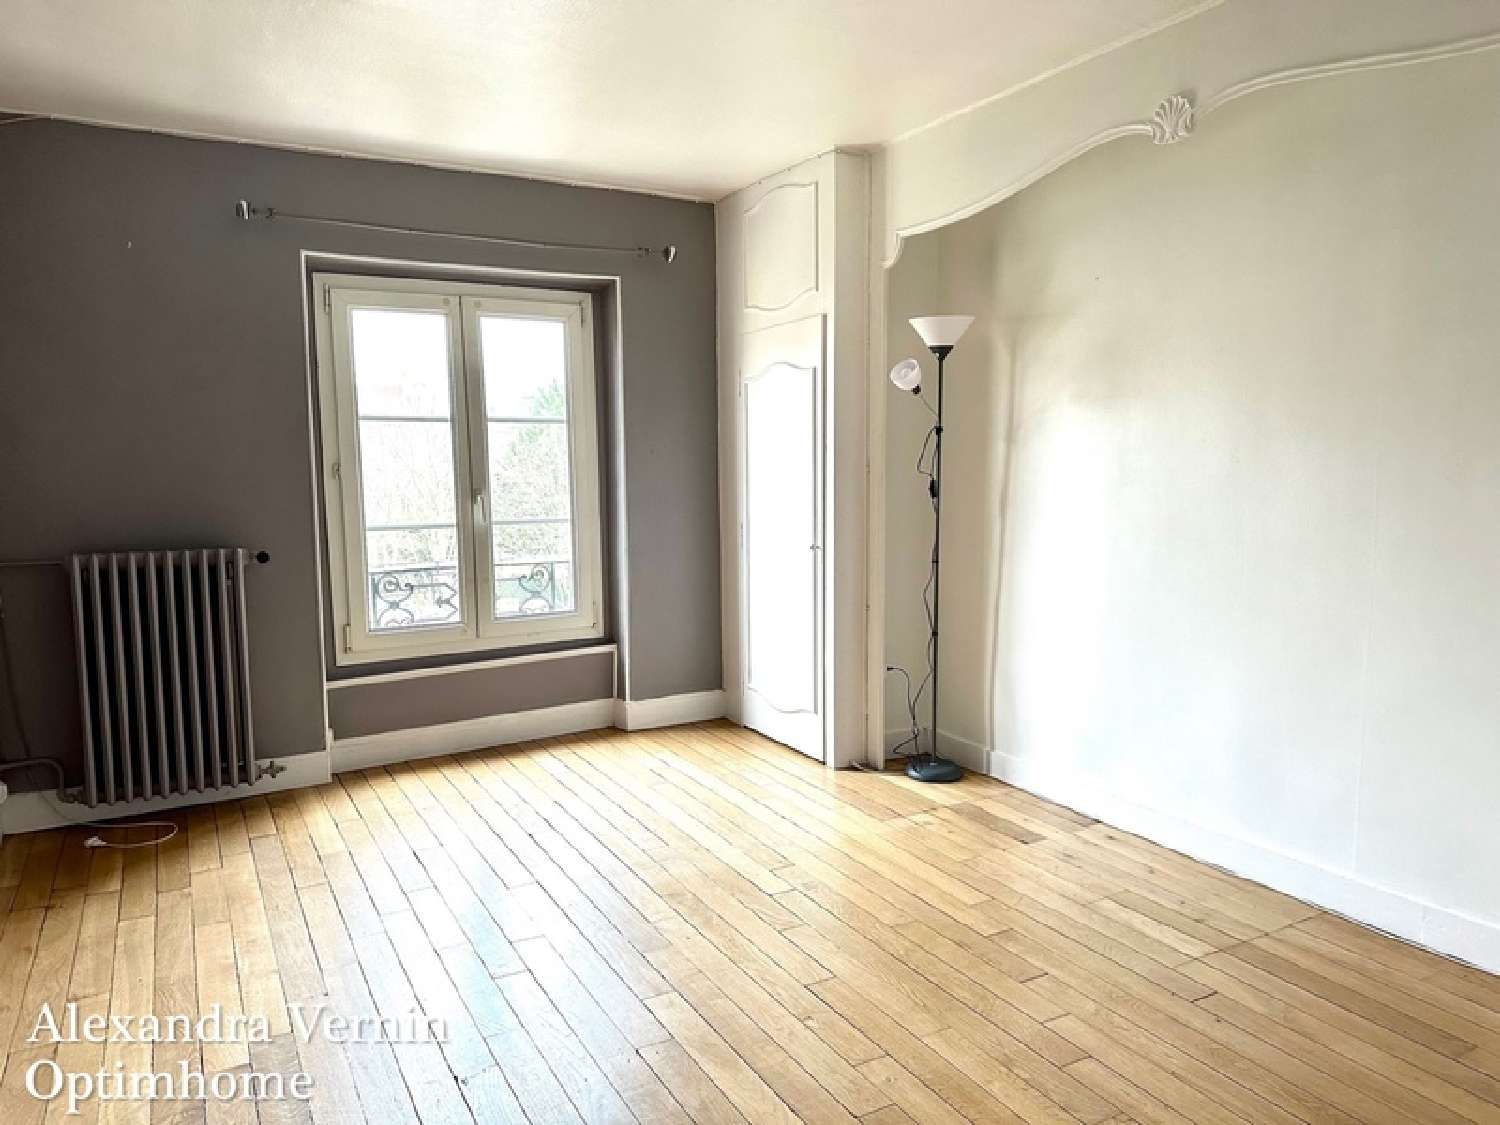  à vendre appartement Saint-Germain-en-Laye Yvelines 3